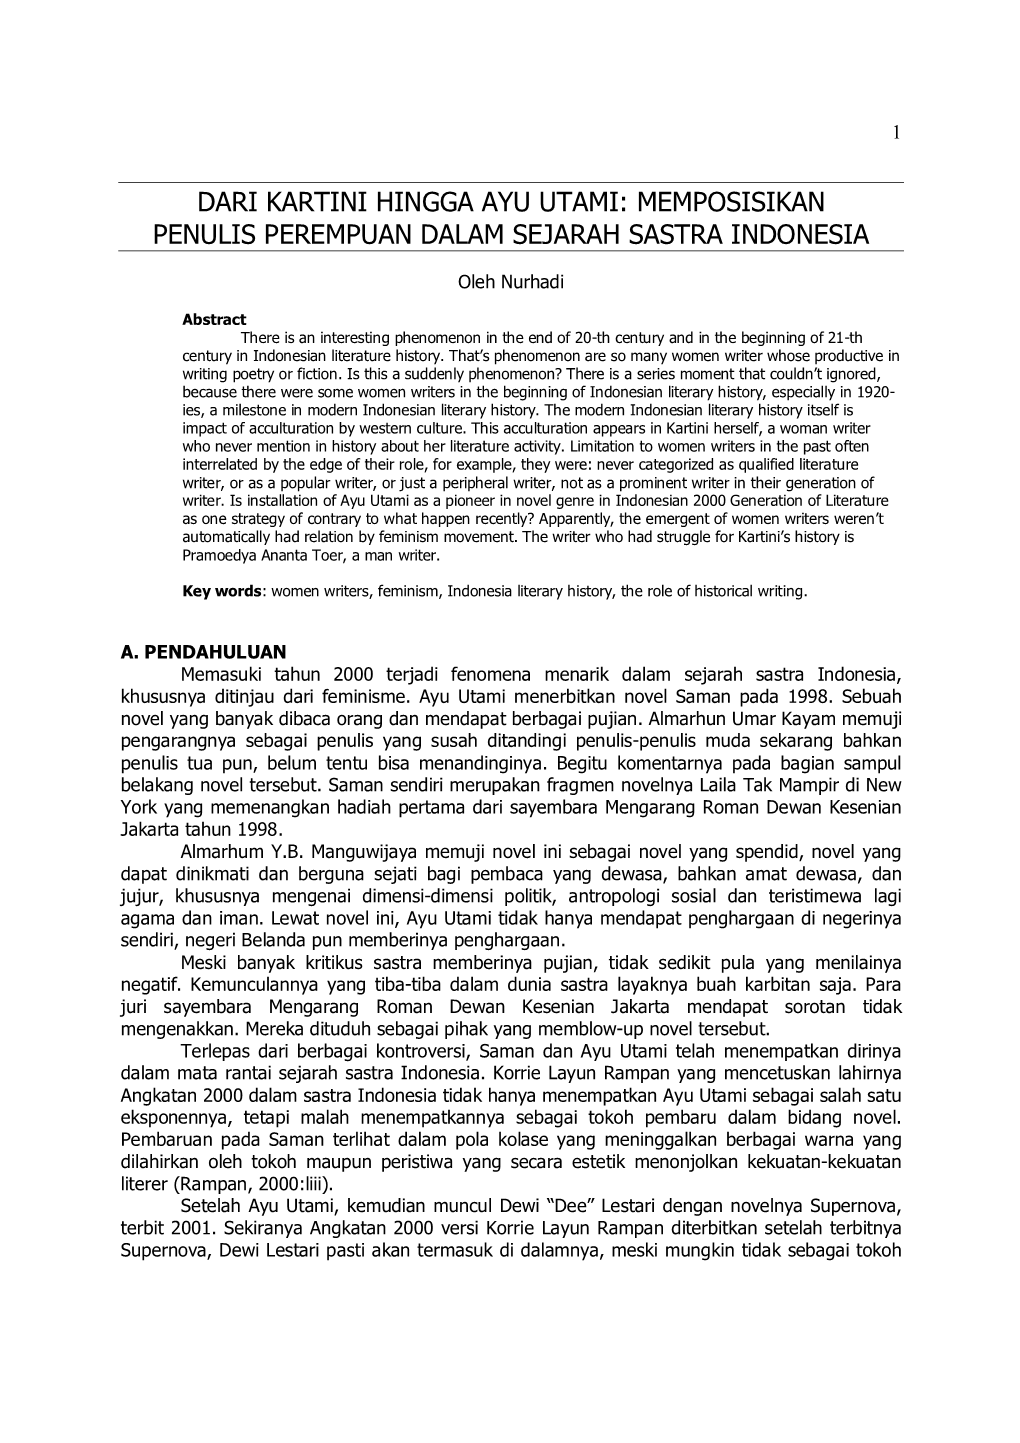 Dari Kartini Hingga Ayu Utami: Memposisikan Penulis Perempuan Dalam Sejarah Sastra Indonesia